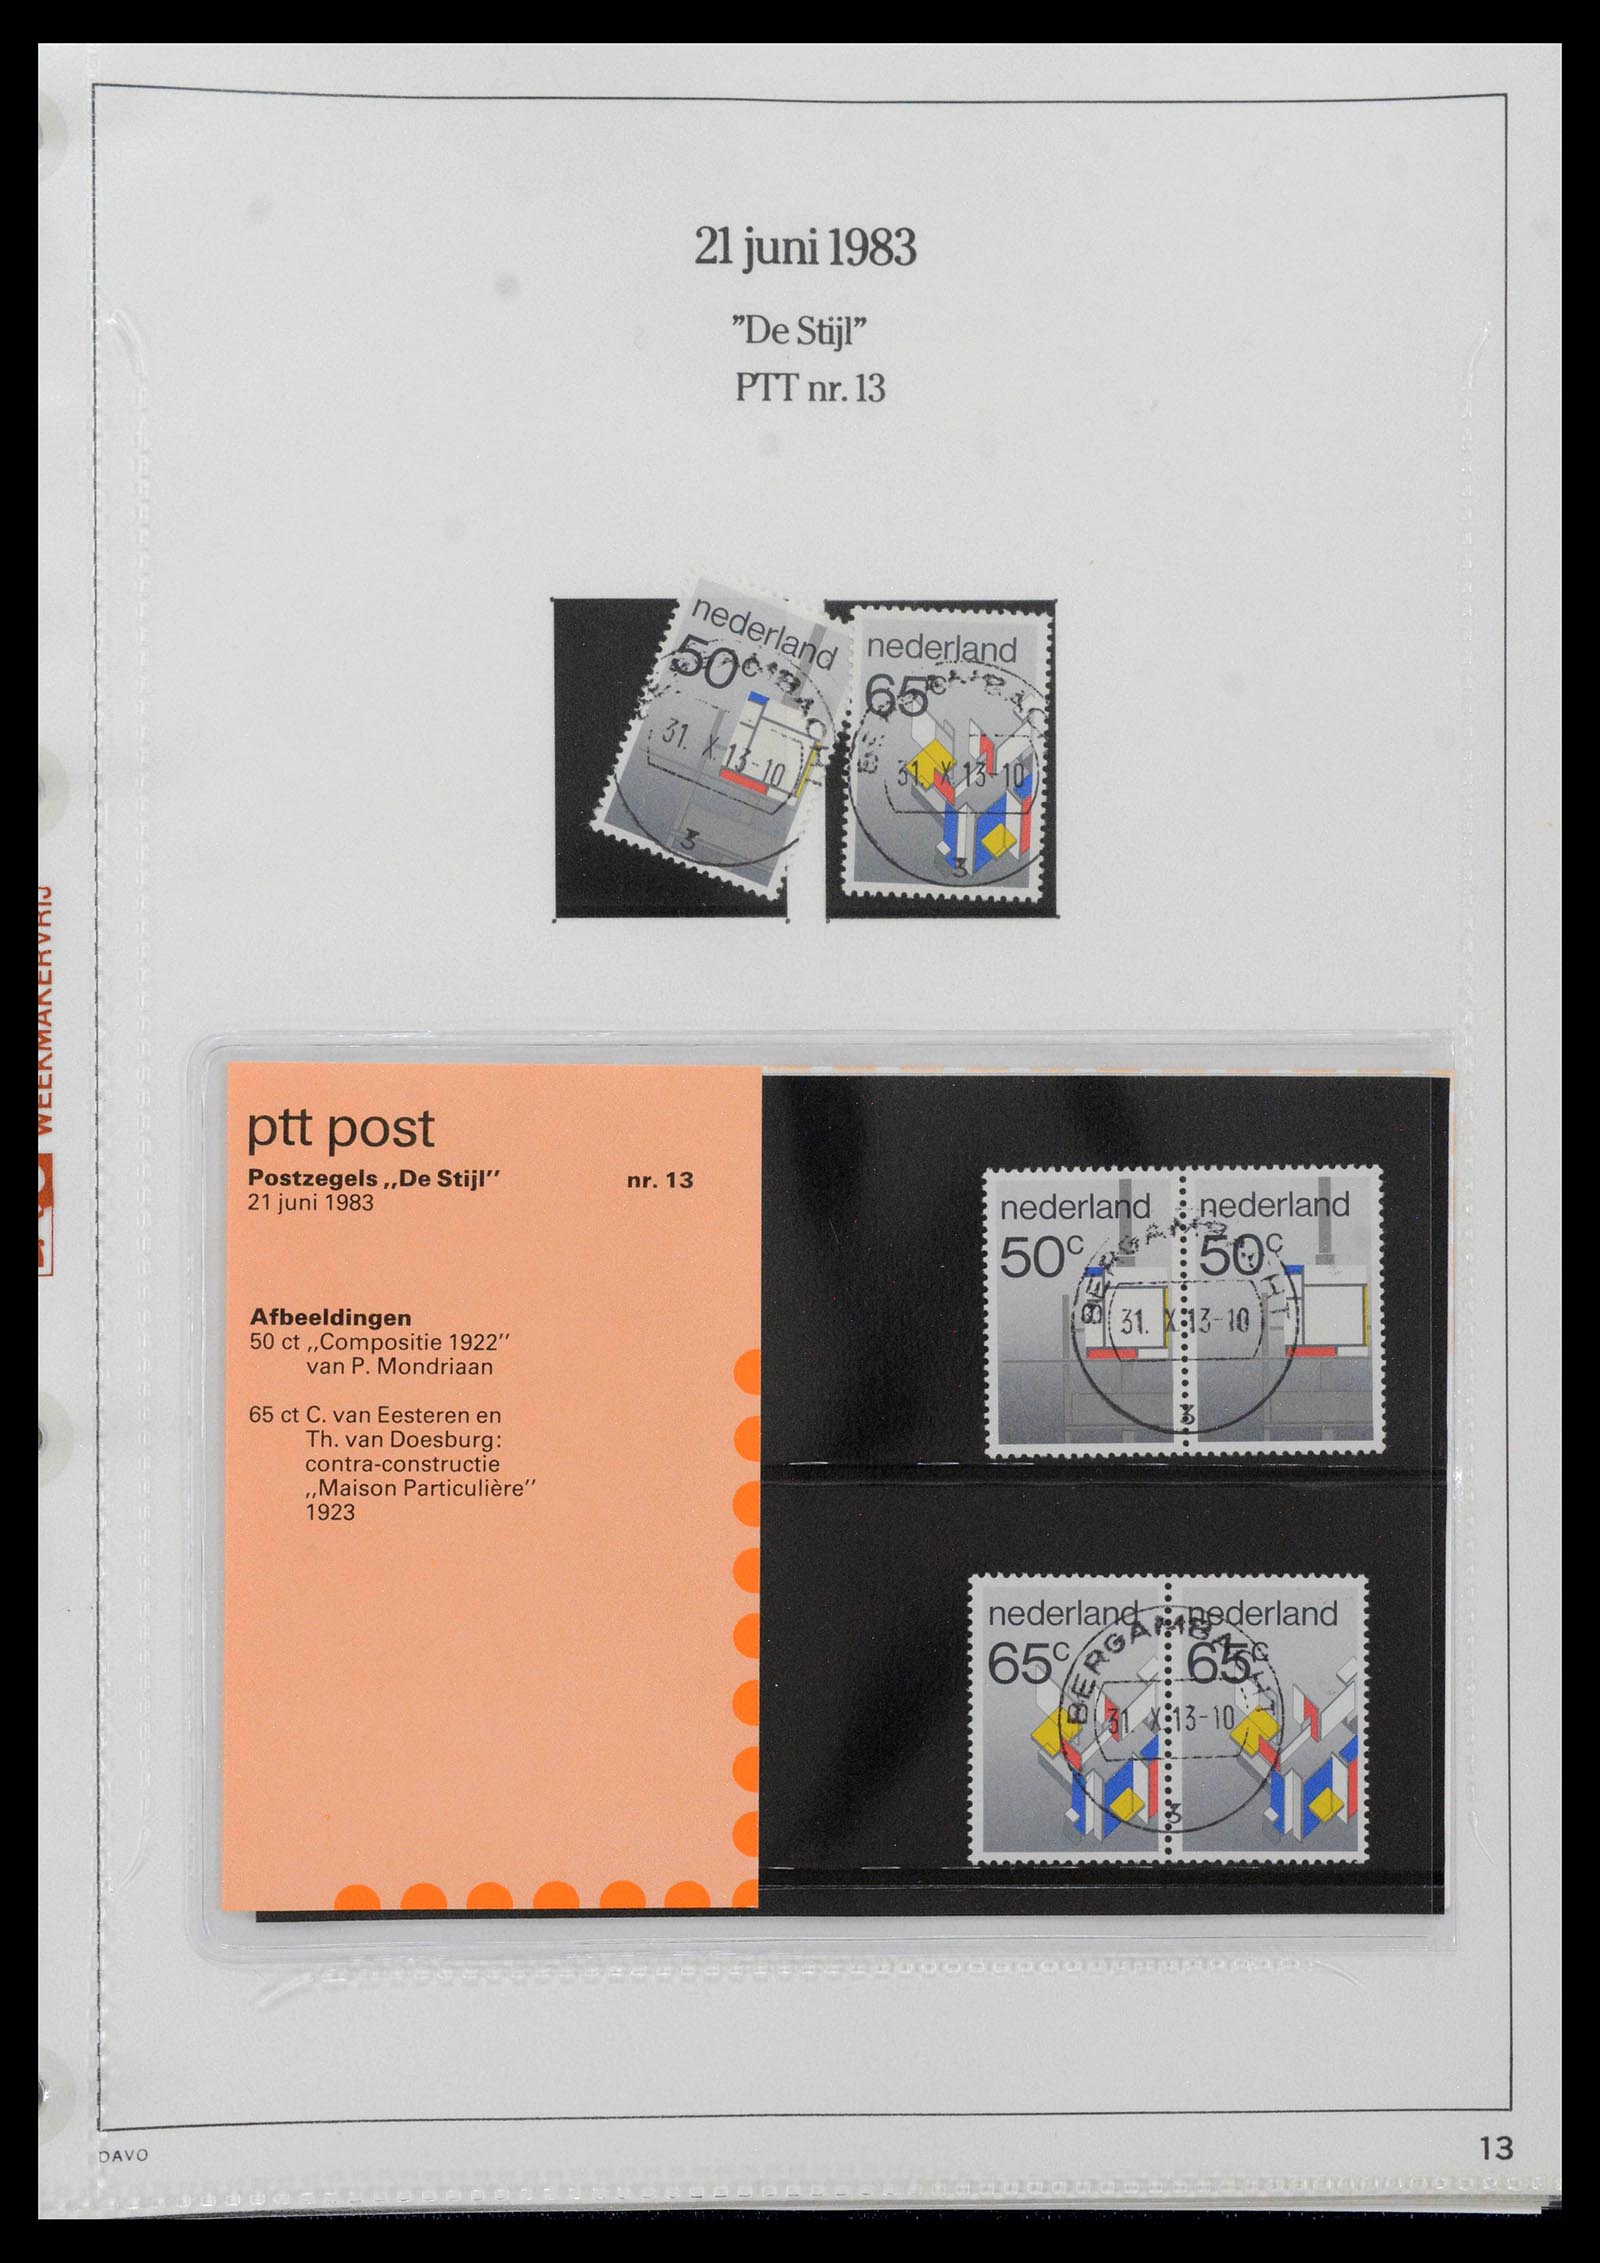 39121 0013 - Stamp collection 39121 Netherlands presentationpacks 1982-2001.